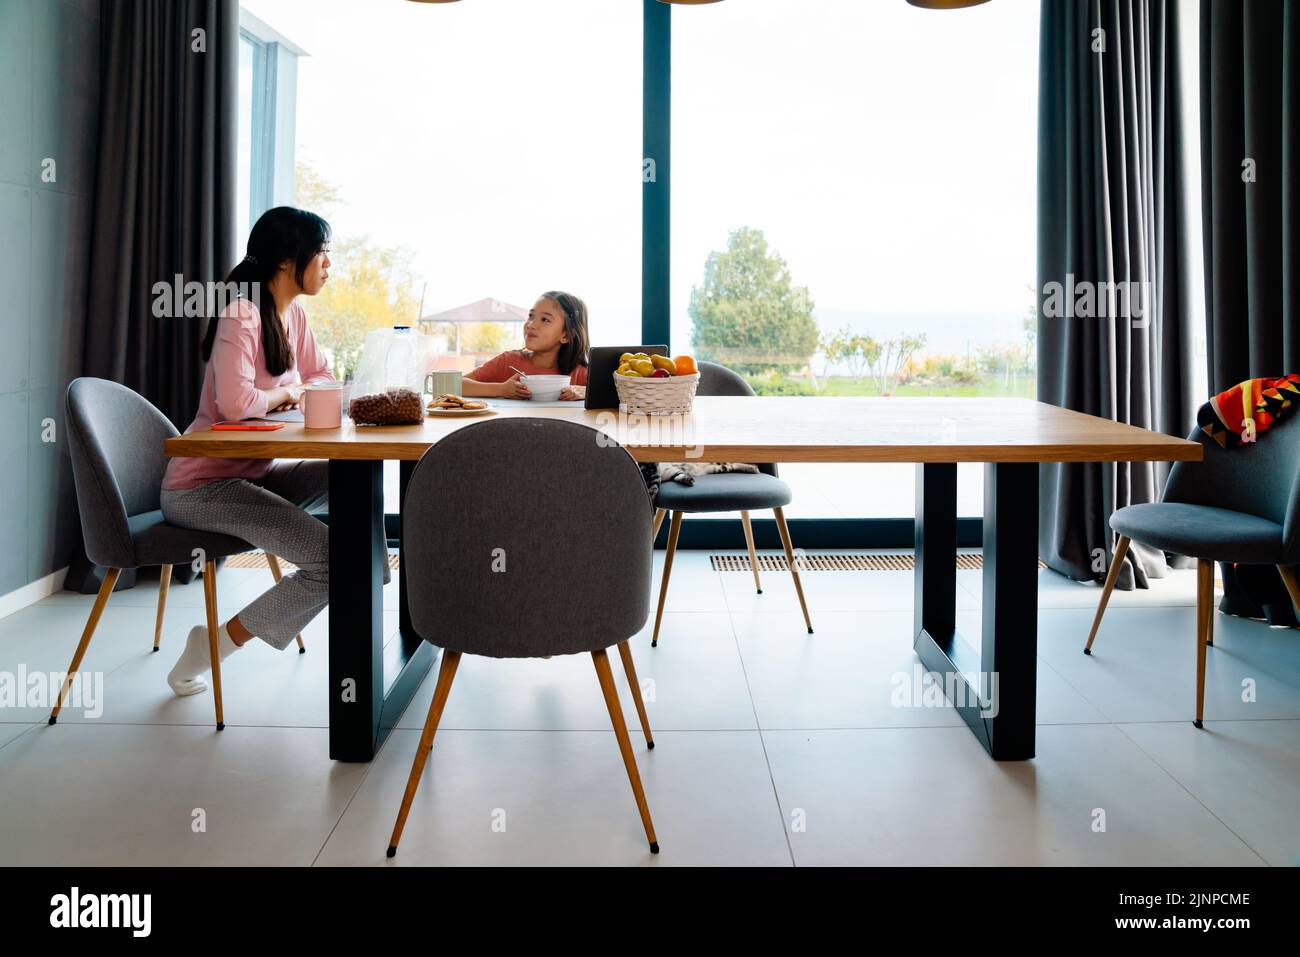 Chica asiática utilizando la tableta mientras desayuna con su madre en casa Foto de stock